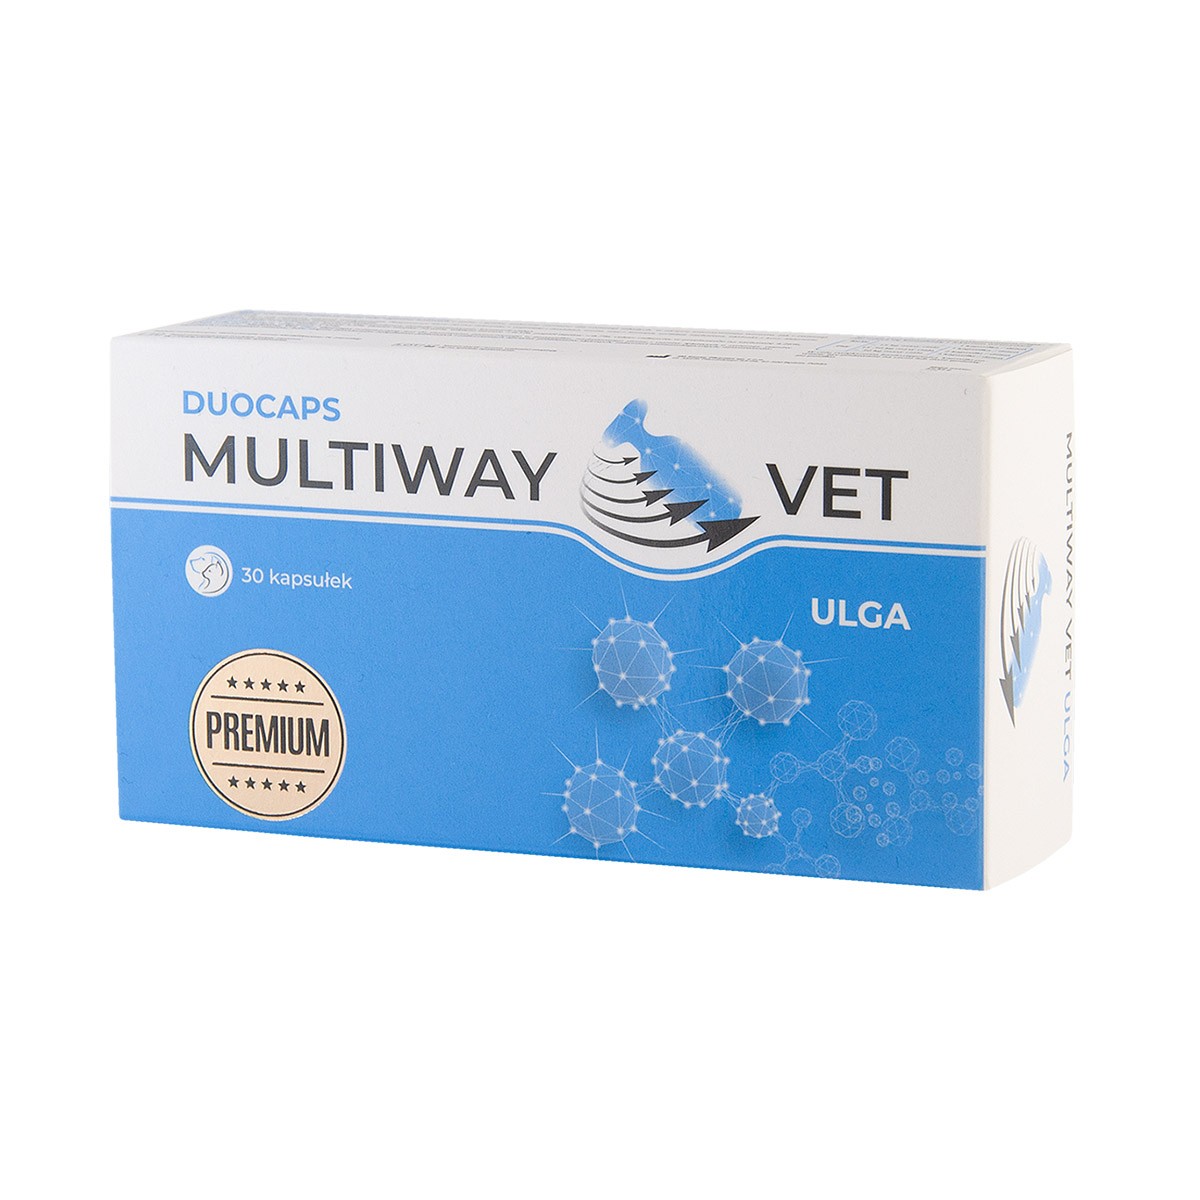 Zdjęcia - Leki i witaminy PSA MULTIWAY Vet Duocaps ulga 30 tabletek łagodzenie objawów stresowych psów i 